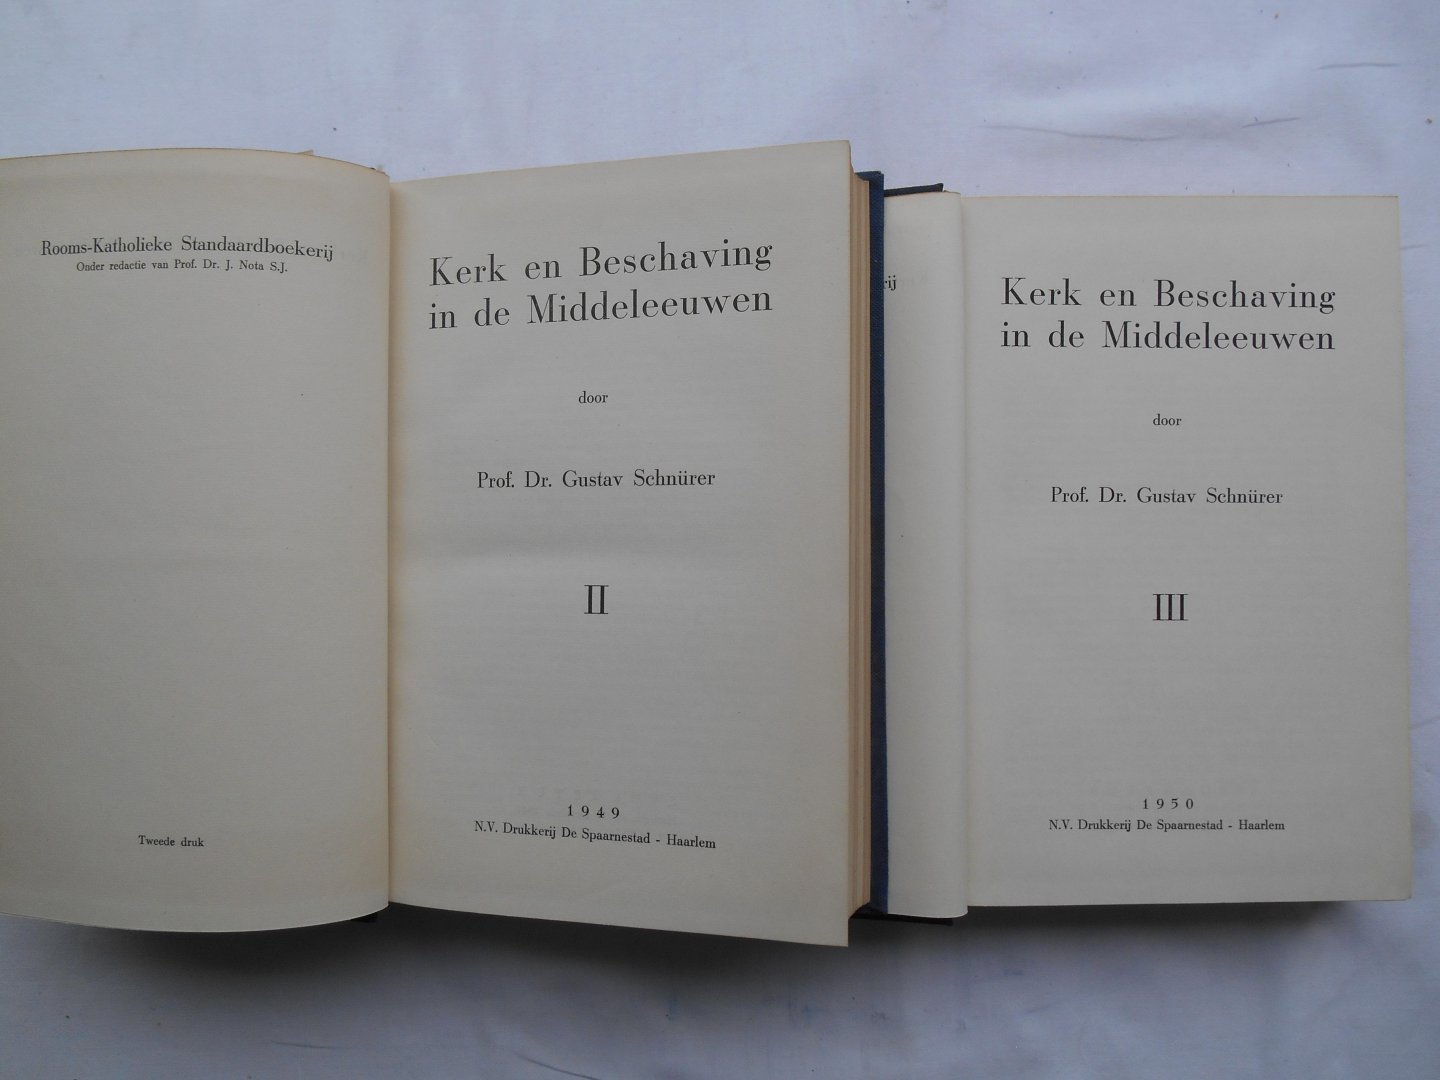 Schnürer, Prof. Dr. Gustav - Kerk en beschaving in de Middeleeuwen, deel III